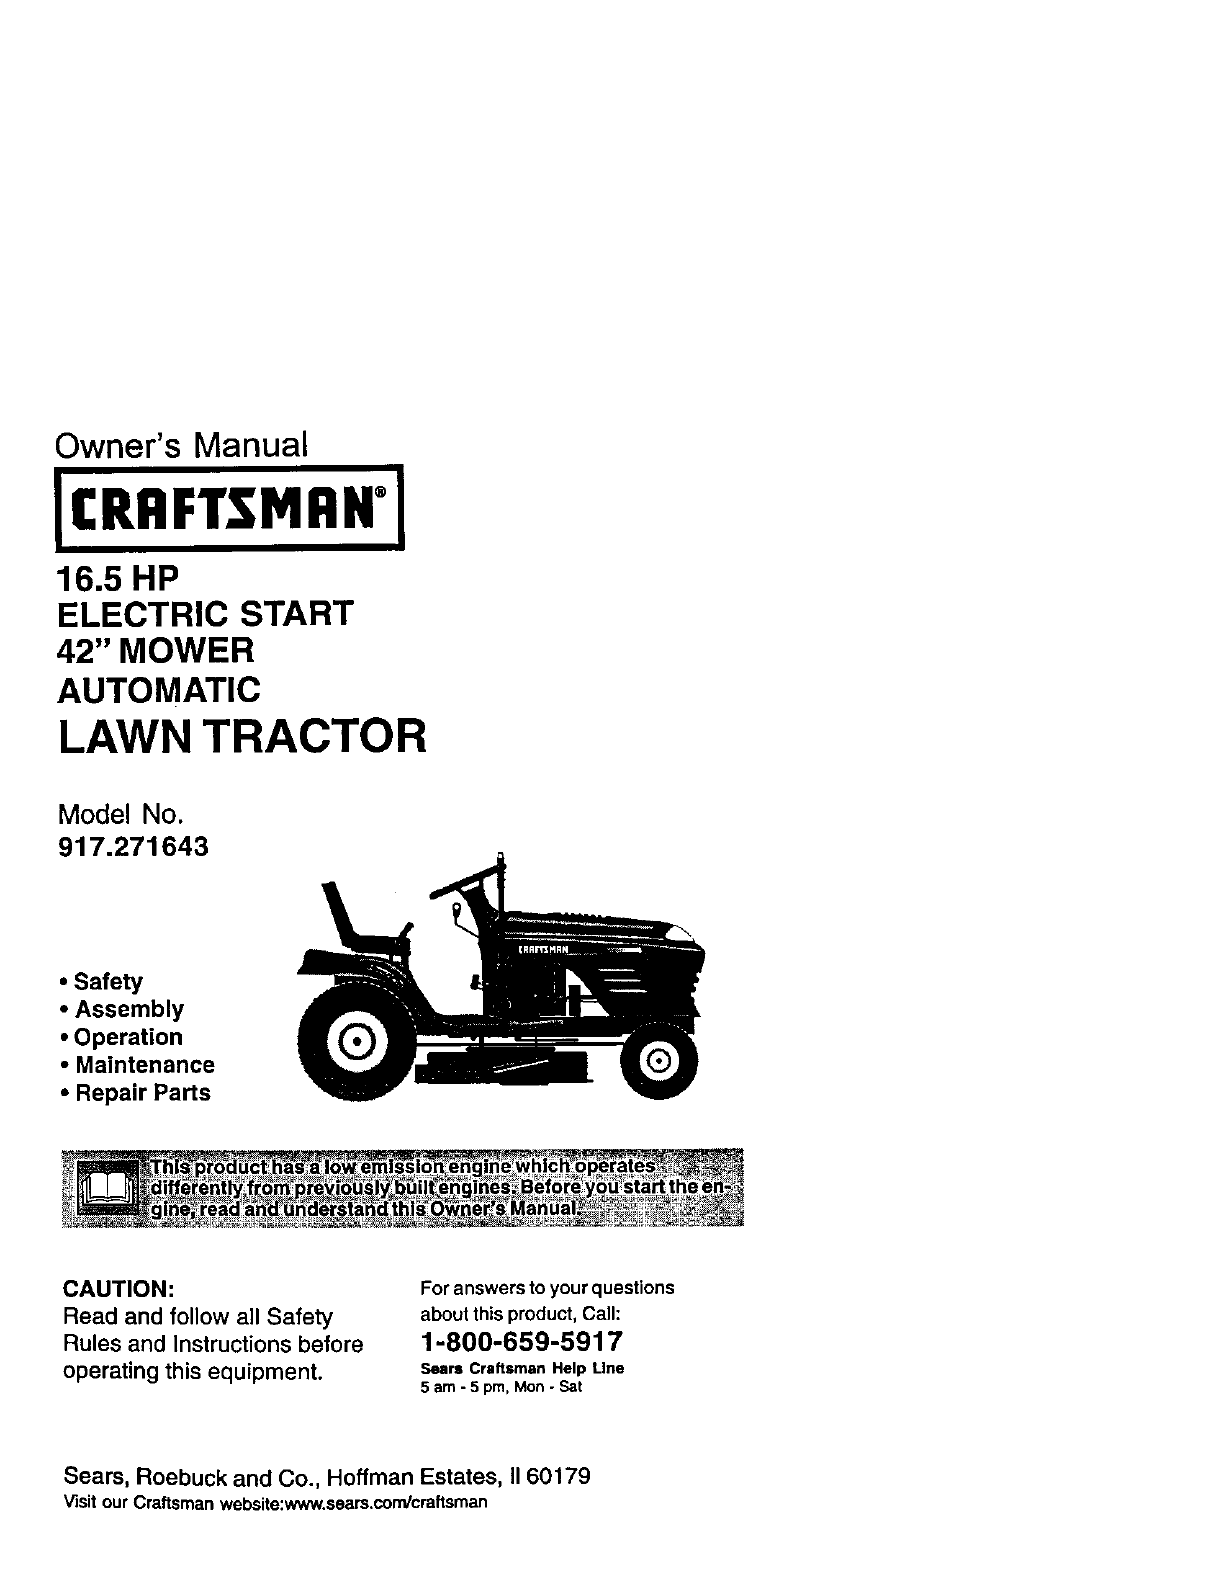 craftsman 390-262453 wiring diagram